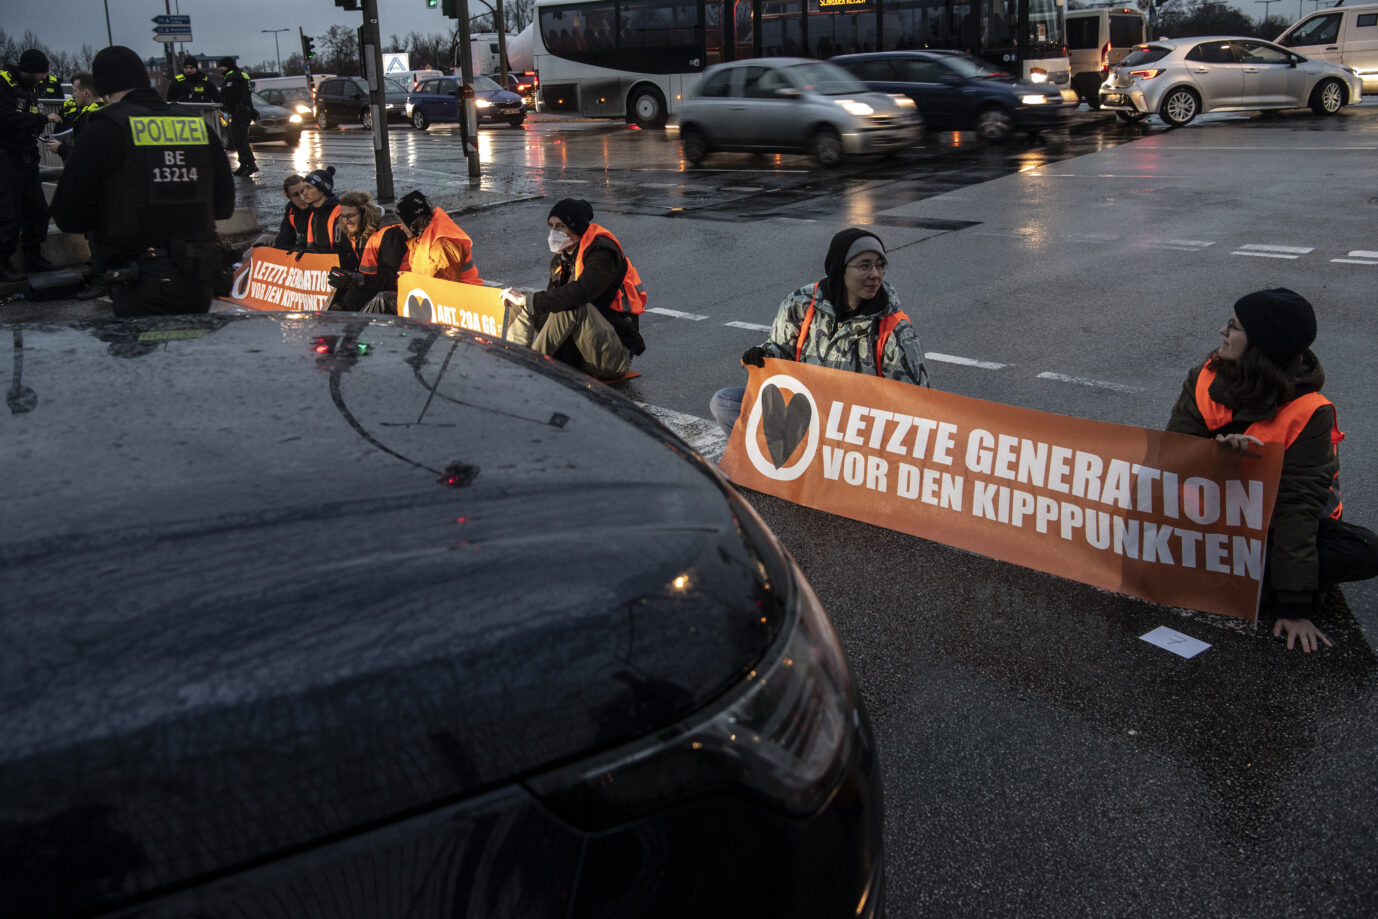 Mitglieder der "Letzten Generation" blockieren immer wieder Straßen in Berlin. Dabei zeigen sie ihre Parolen auf Plakaten. Autofahrer müssen warten.